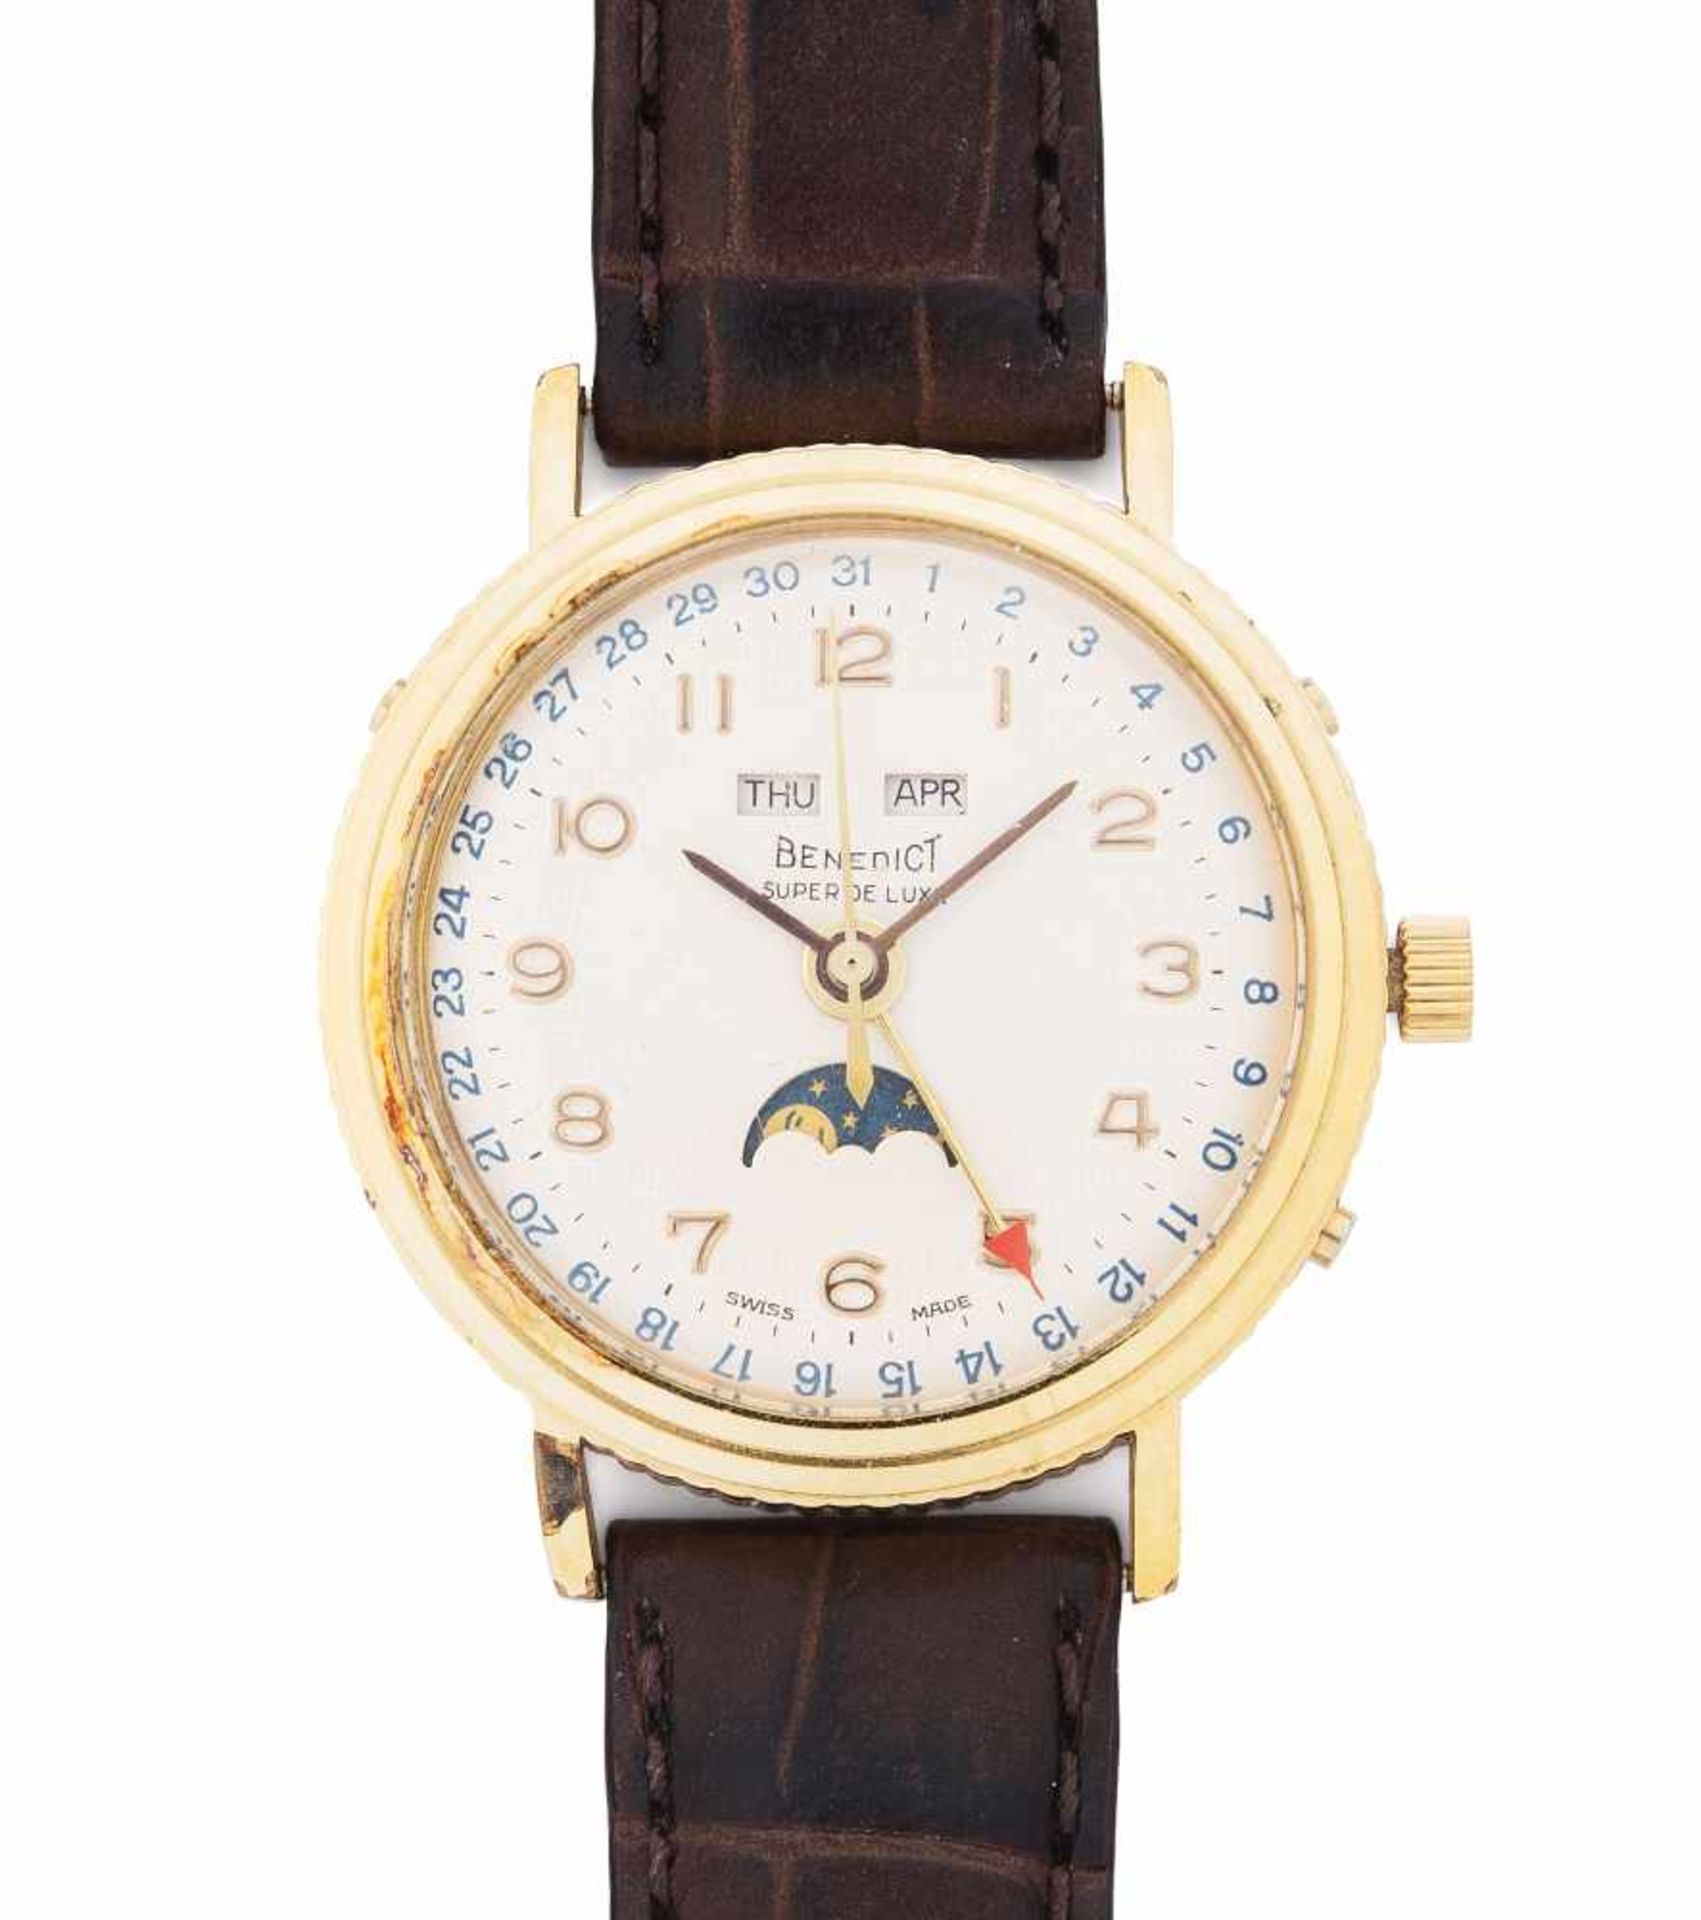 Benedict Super De LuxeRunde, mechanische Armbanduhr 60er Jahre mit Vollkalender und Handaufzug in